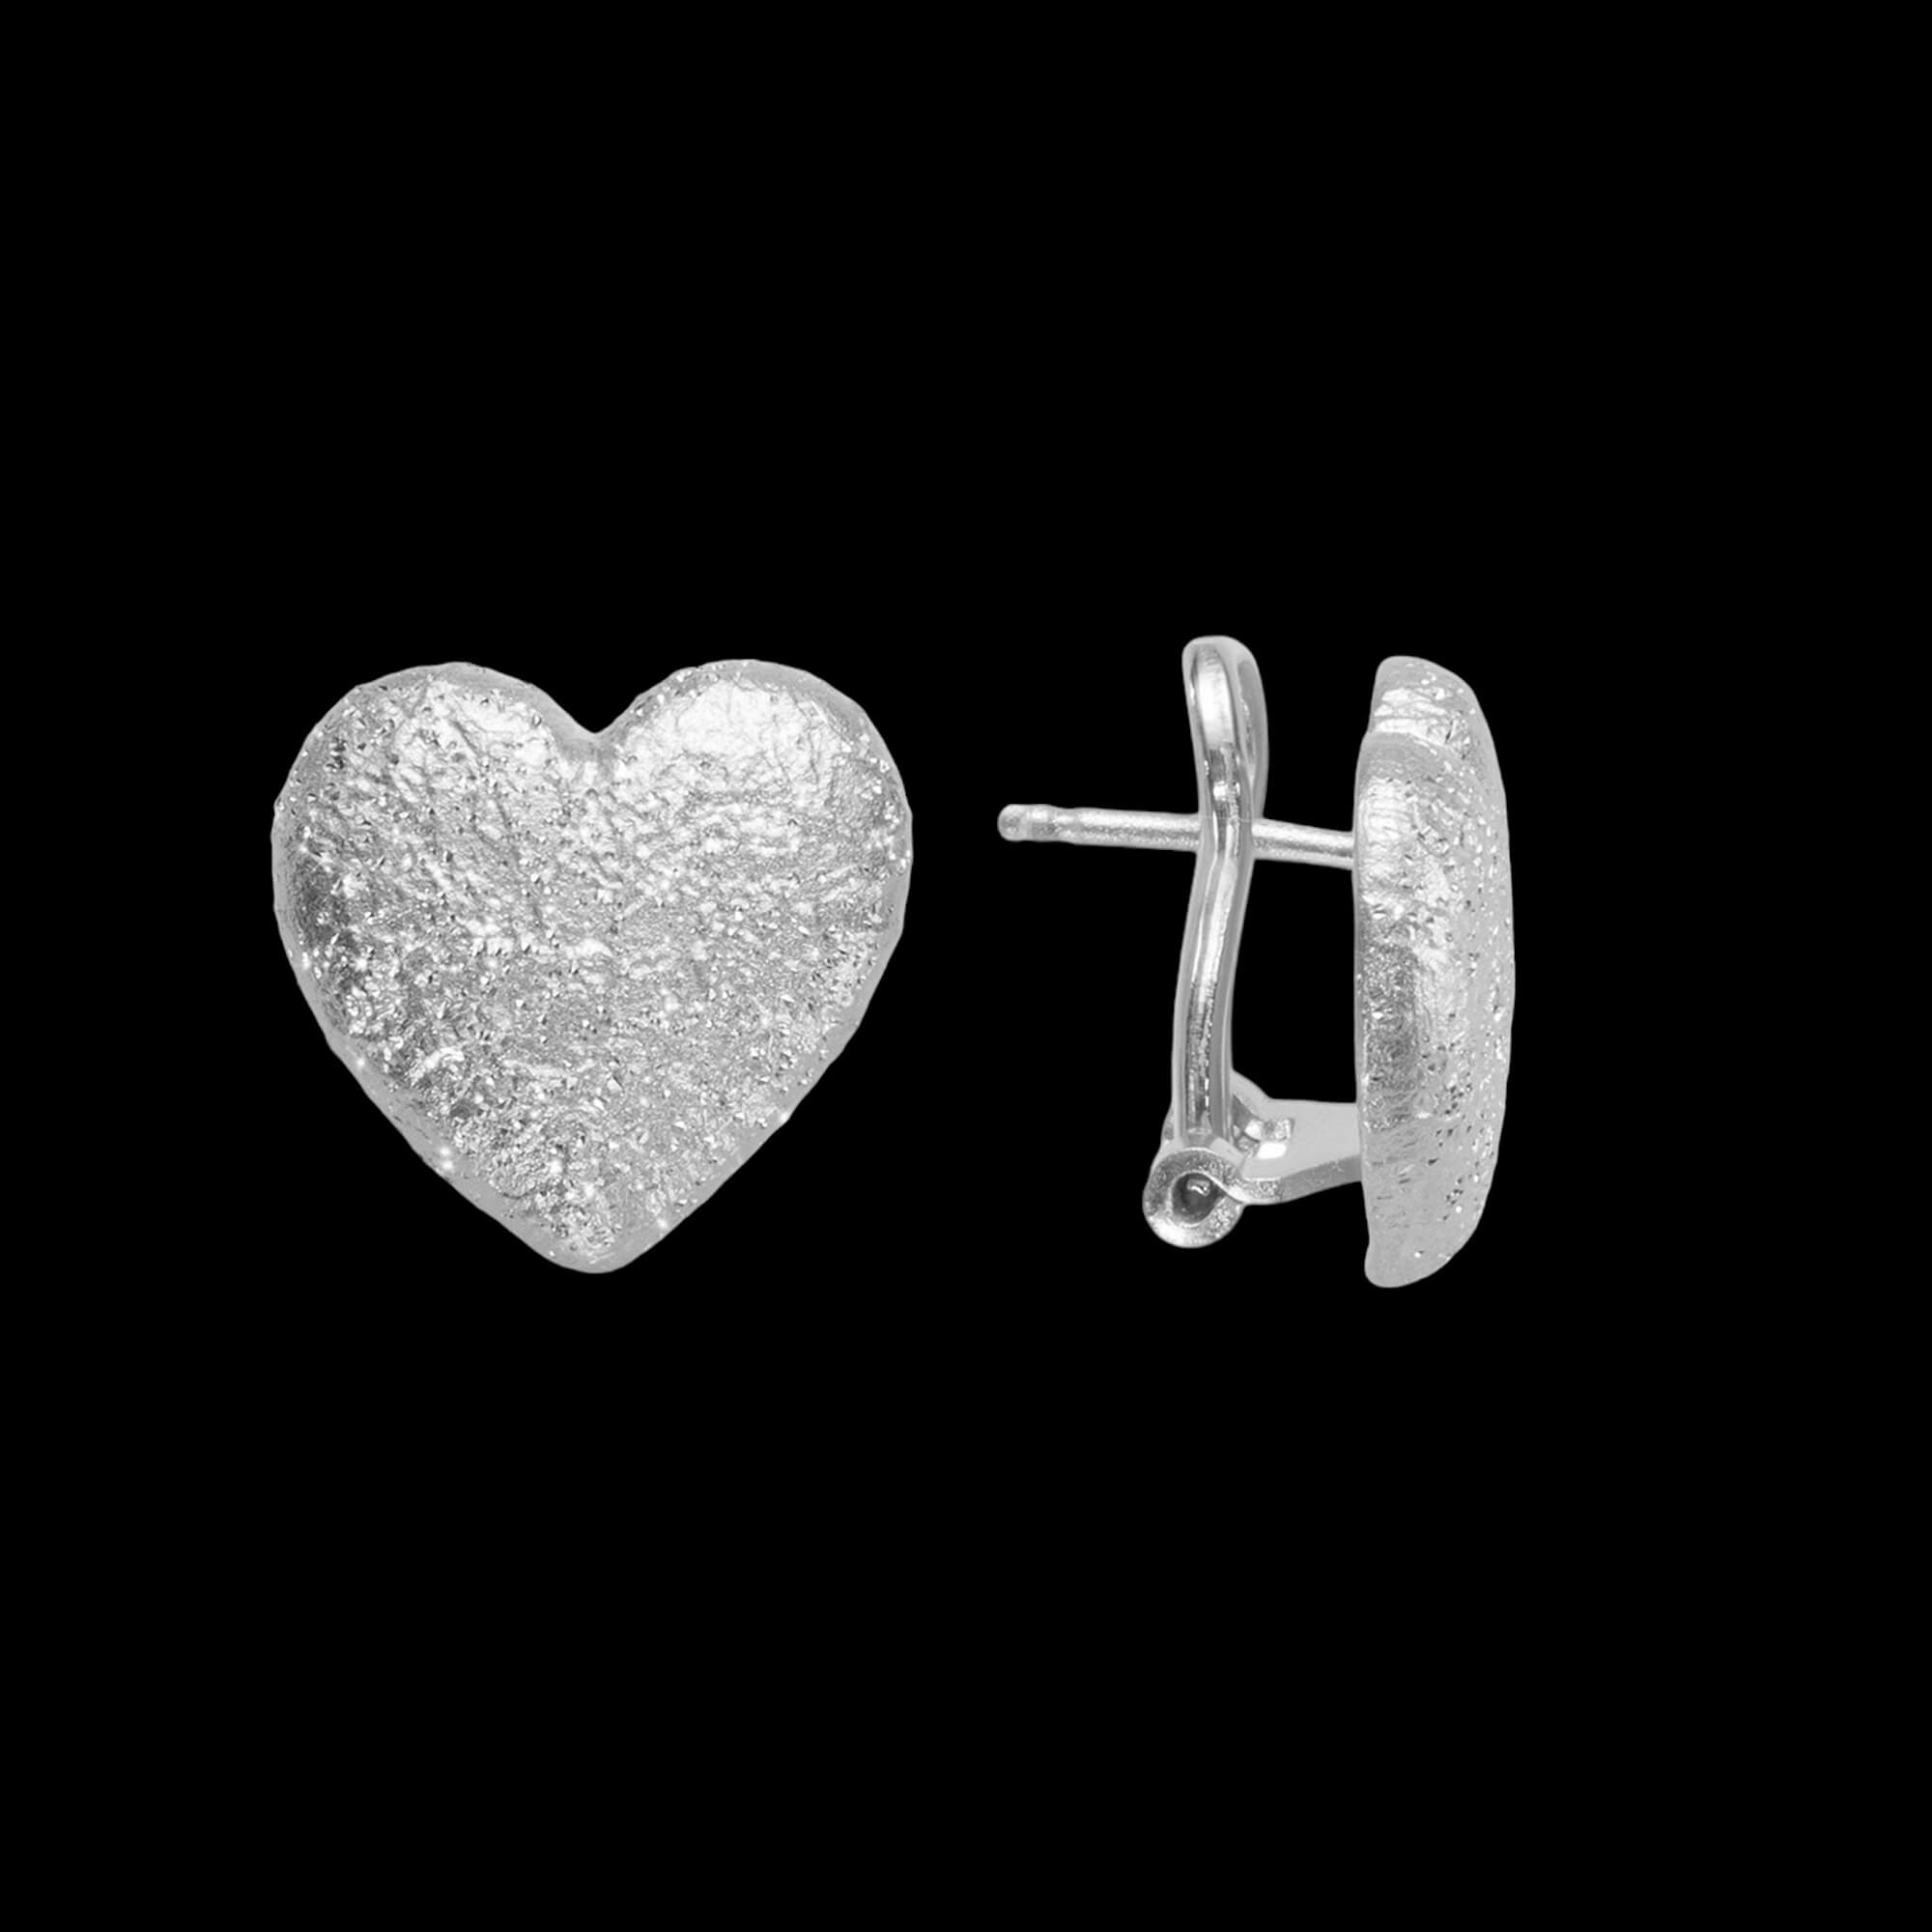 Silver hearts earrings